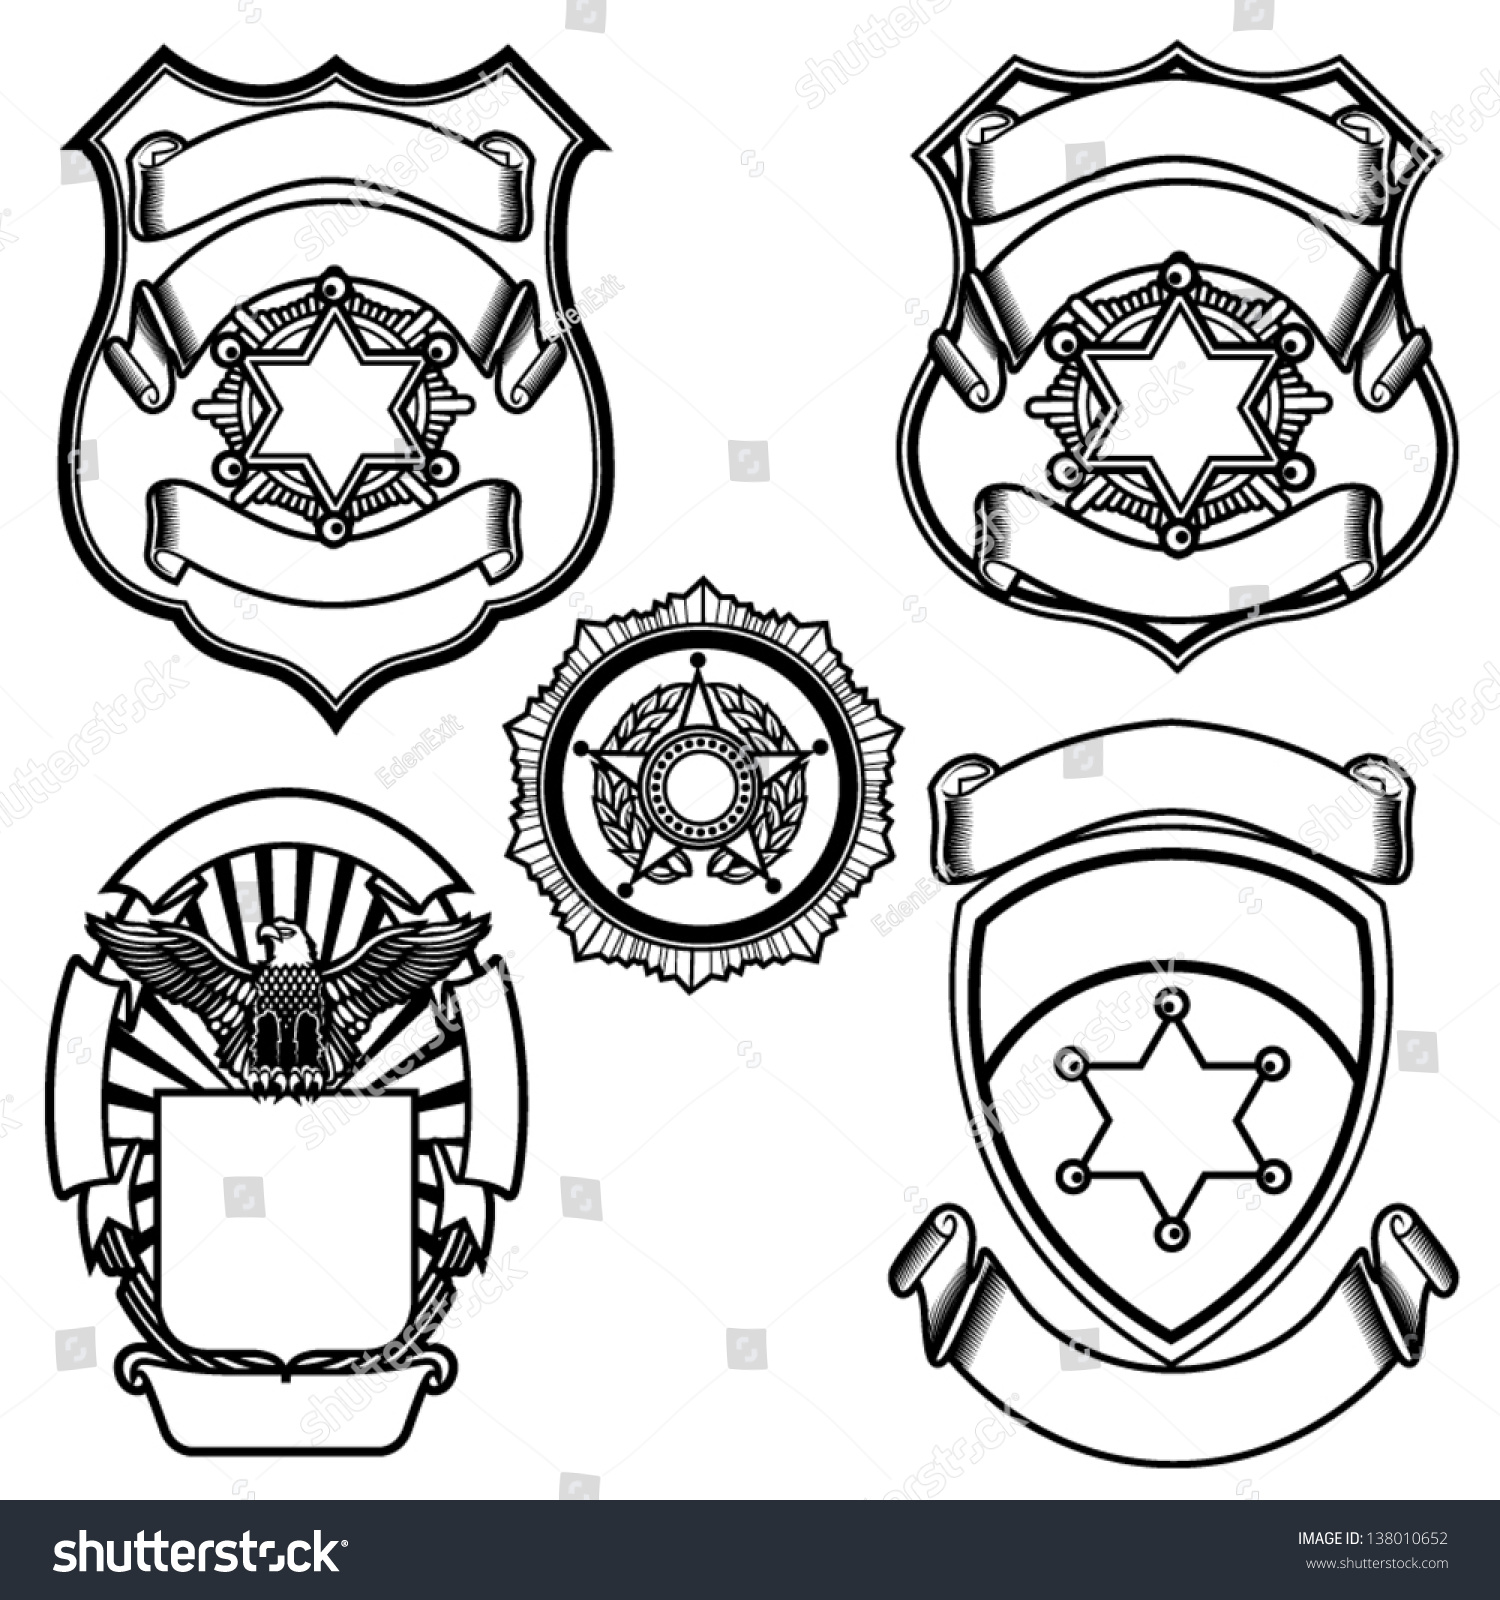 SVG of Vector illustration of sheriff badges svg